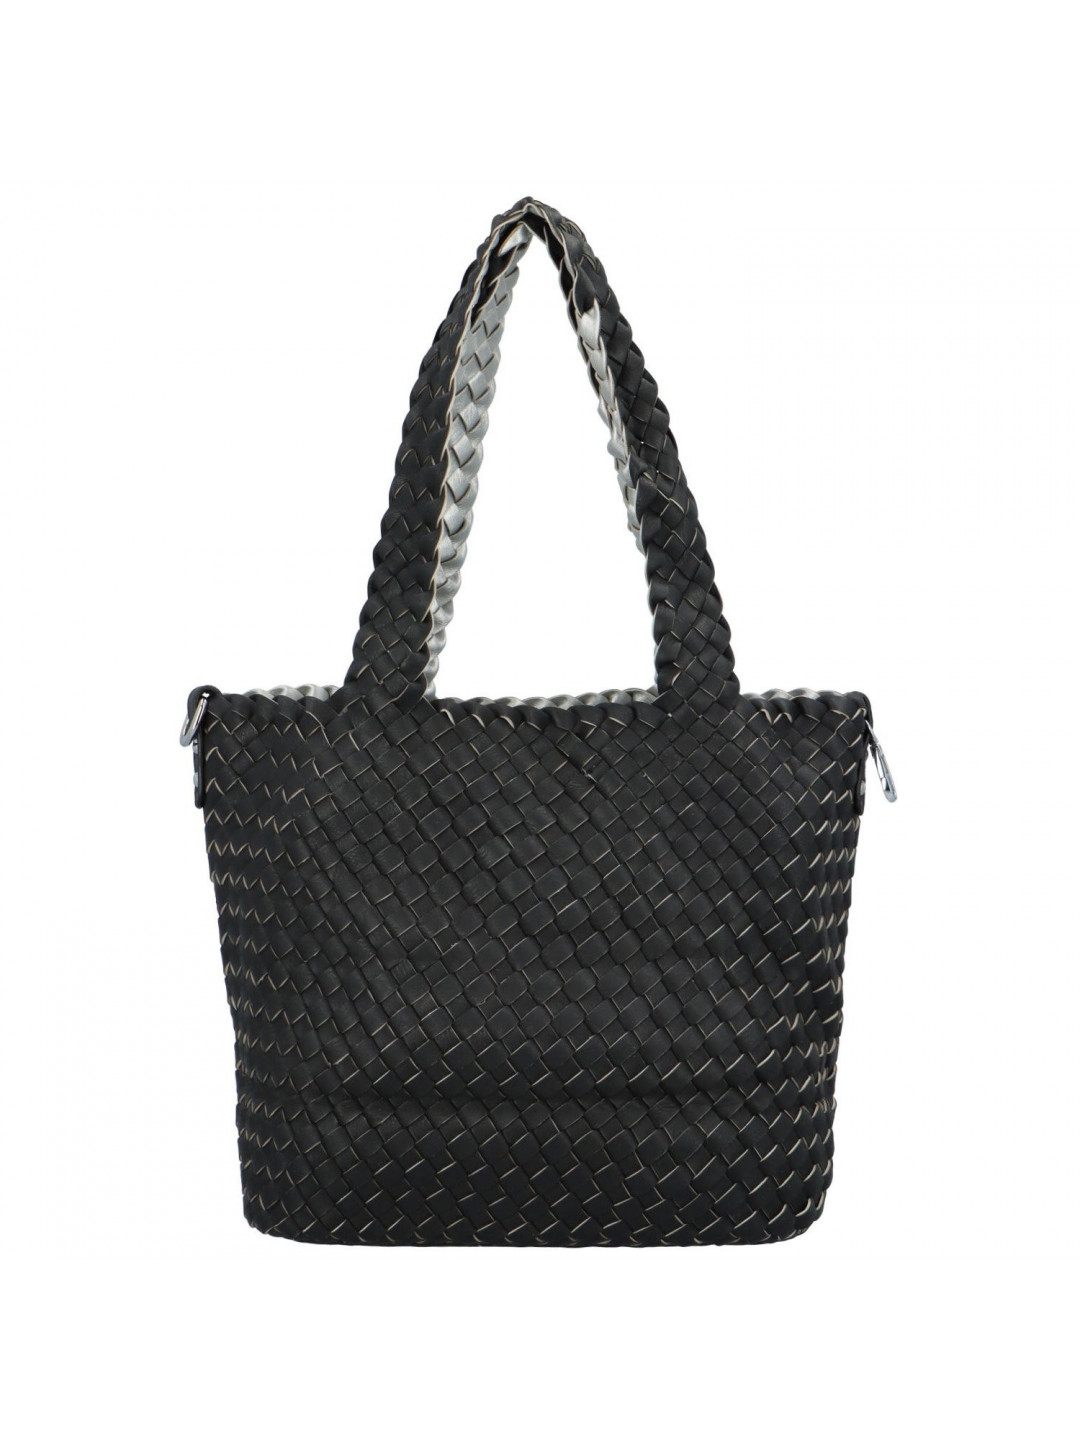 Dámská kabelka přes rameno černo stříbrná – Paolo bags Ukina